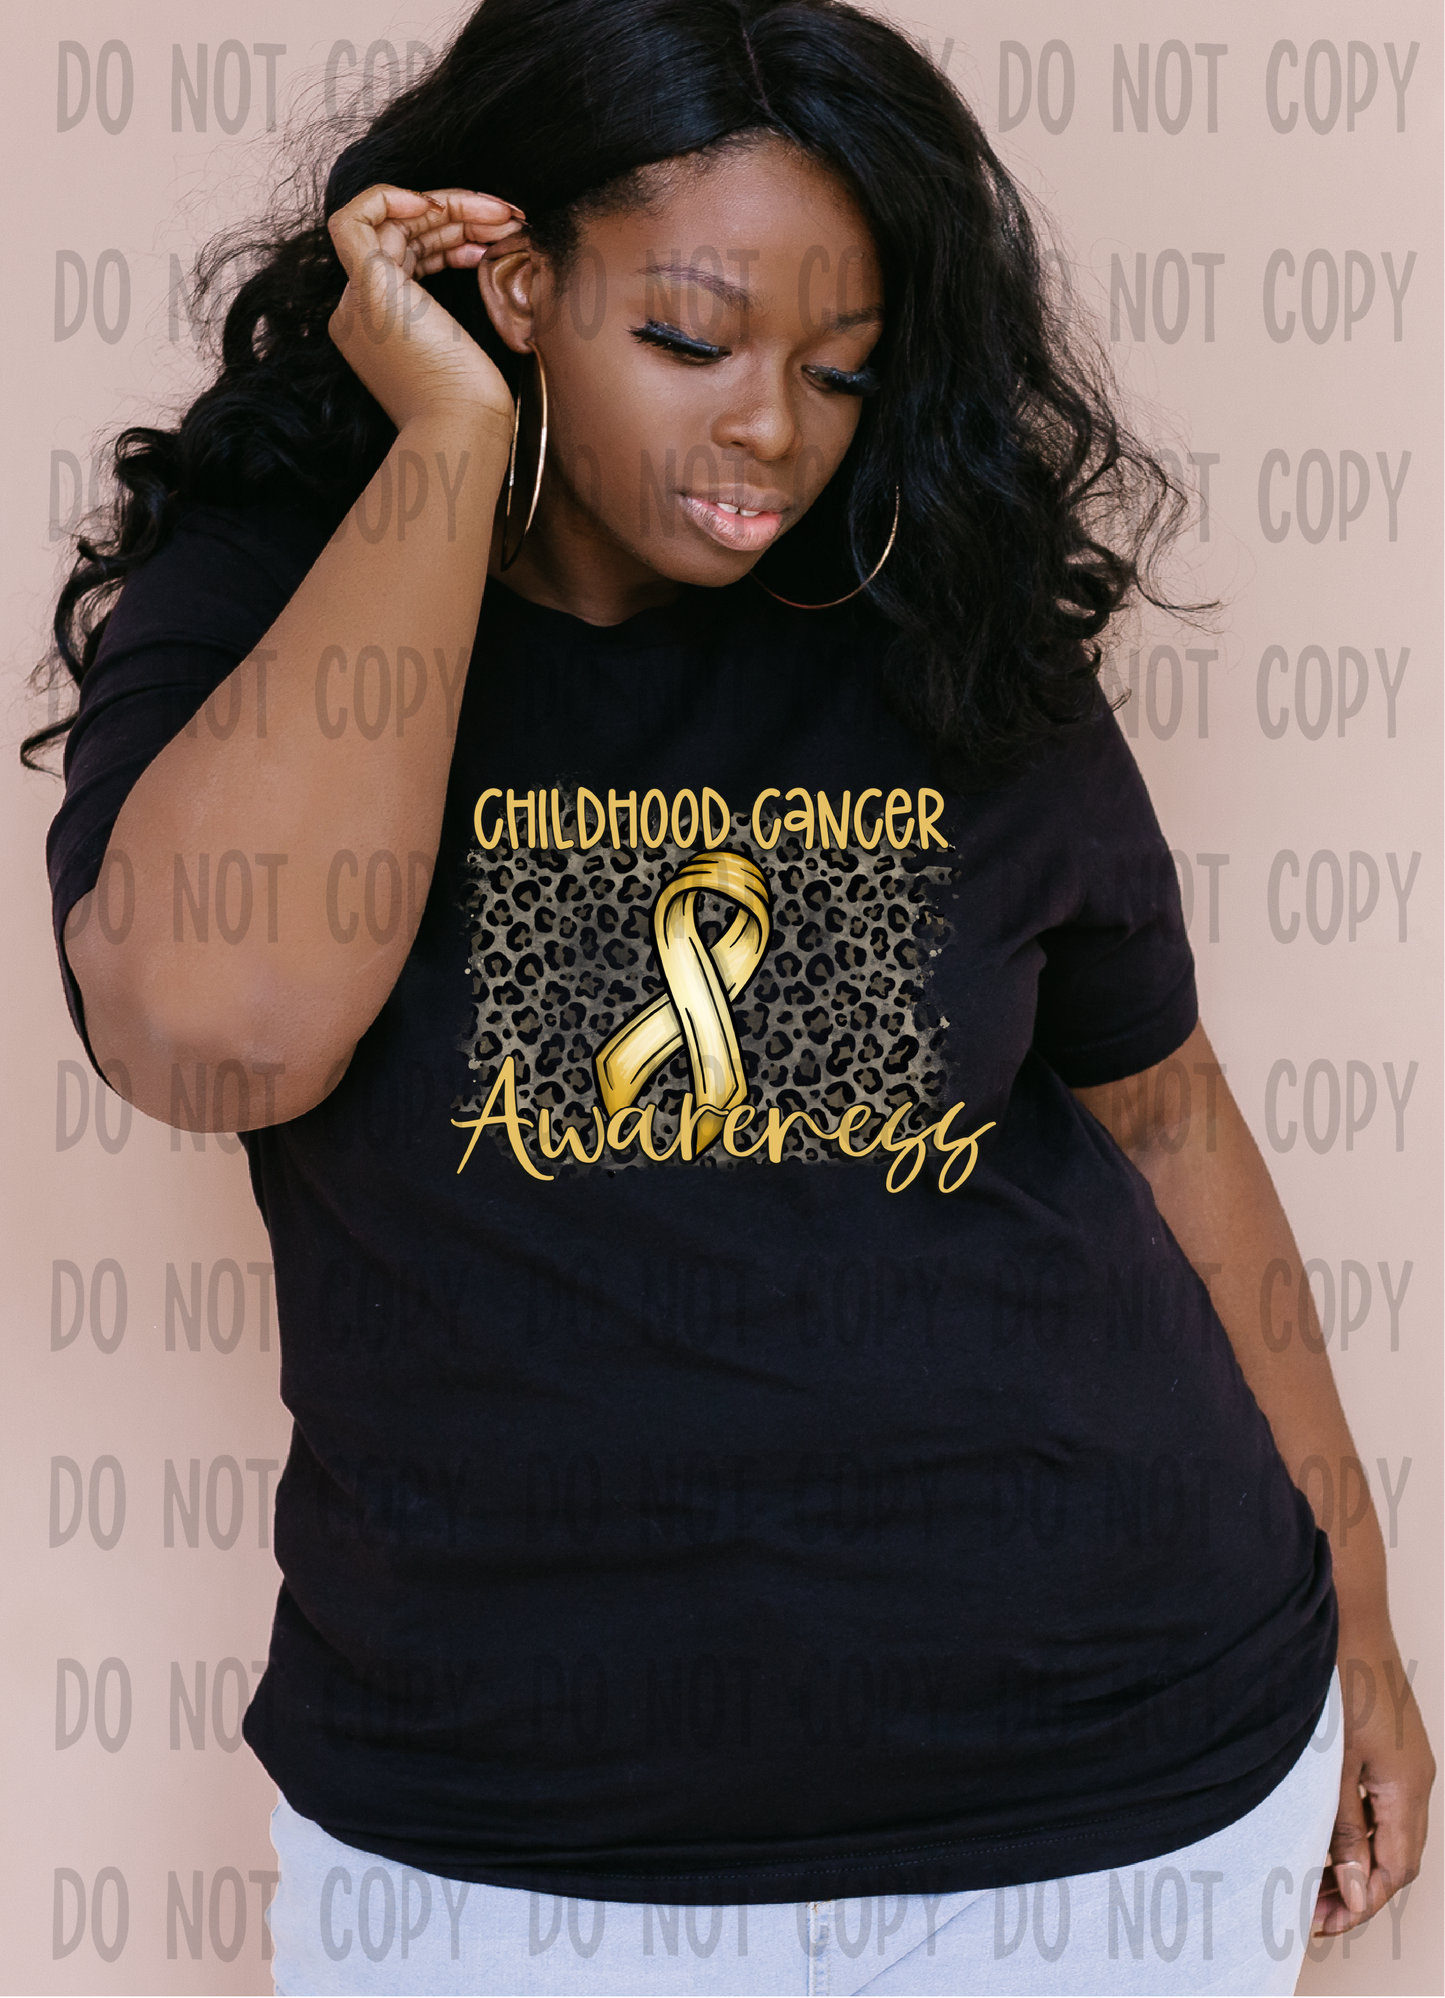 Childhood cancer awareness - DTF